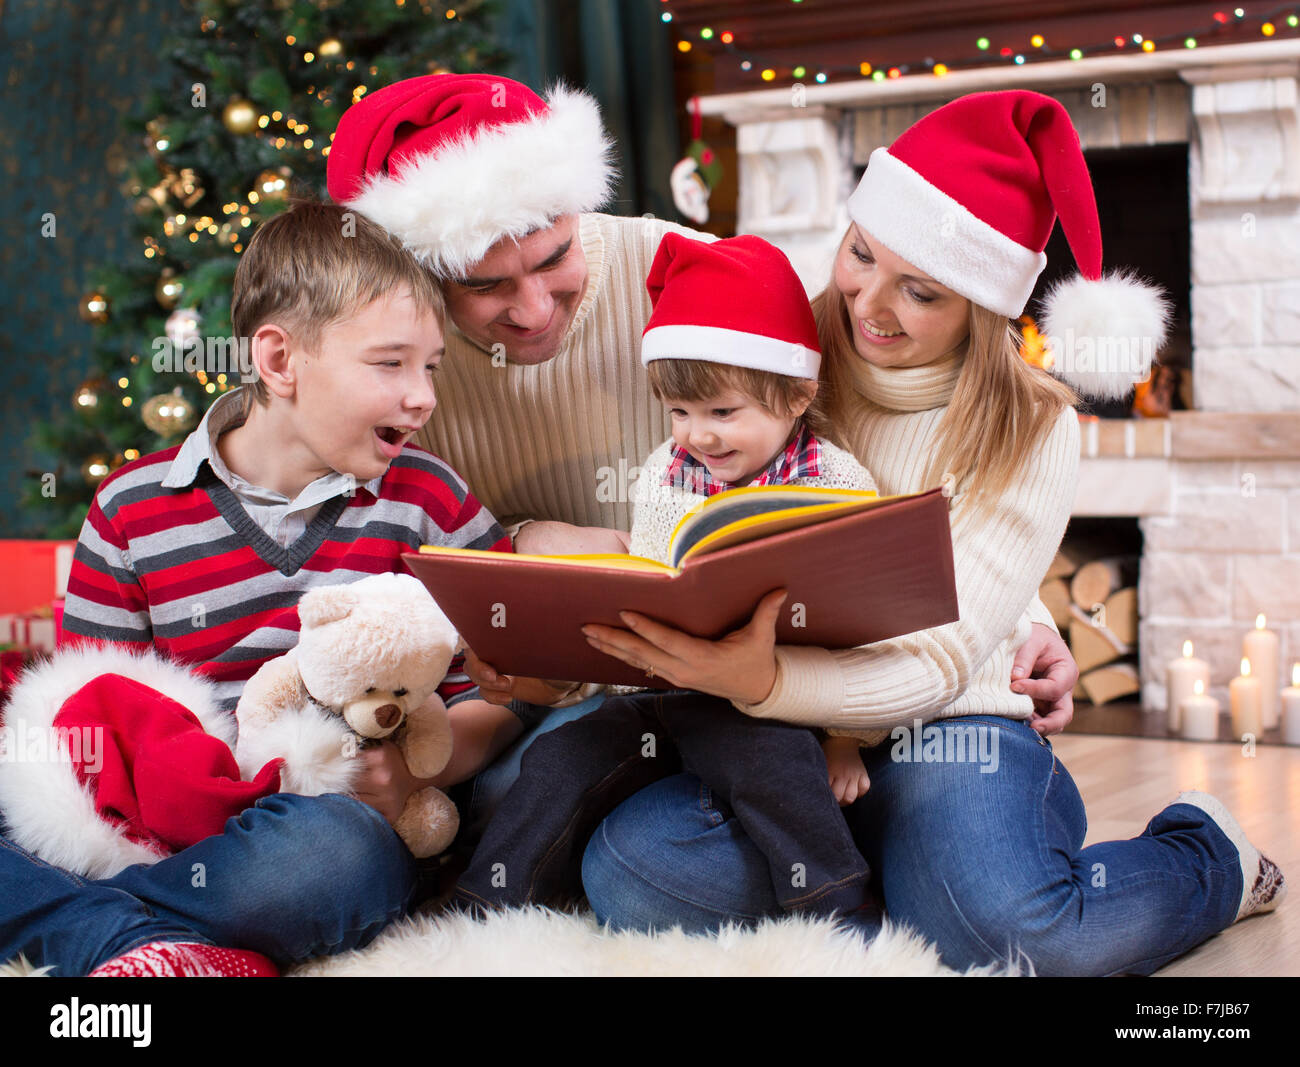 La lectura de un libro de familia delante del árbol de Navidad Foto de stock